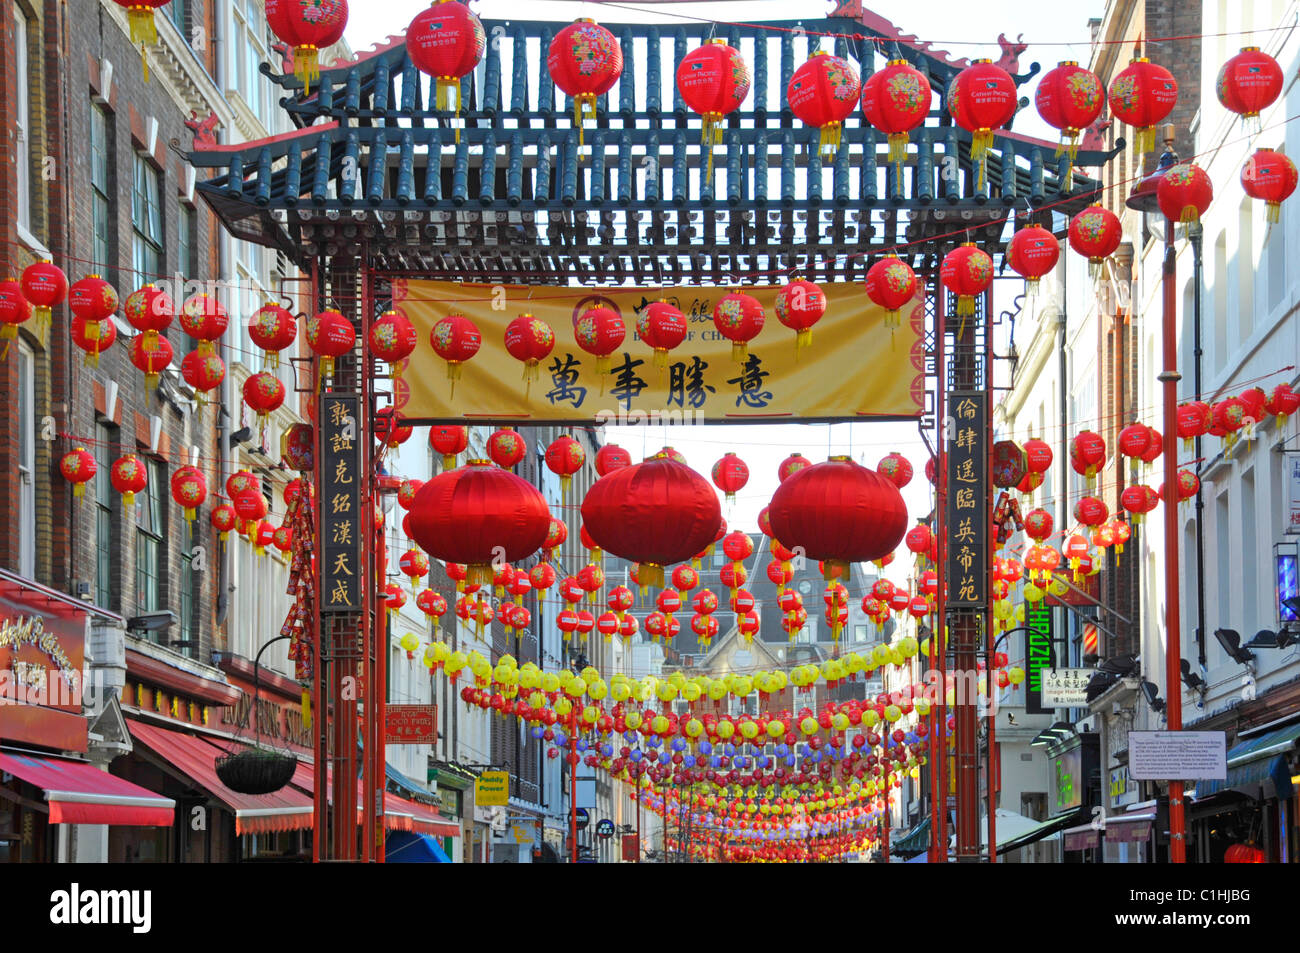 Chinatown paysage urbain Londres West End Street scène coloré chinois Décorations lanternes et porte d'entrée de China Town Gerrard Street England ROYAUME-UNI Banque D'Images